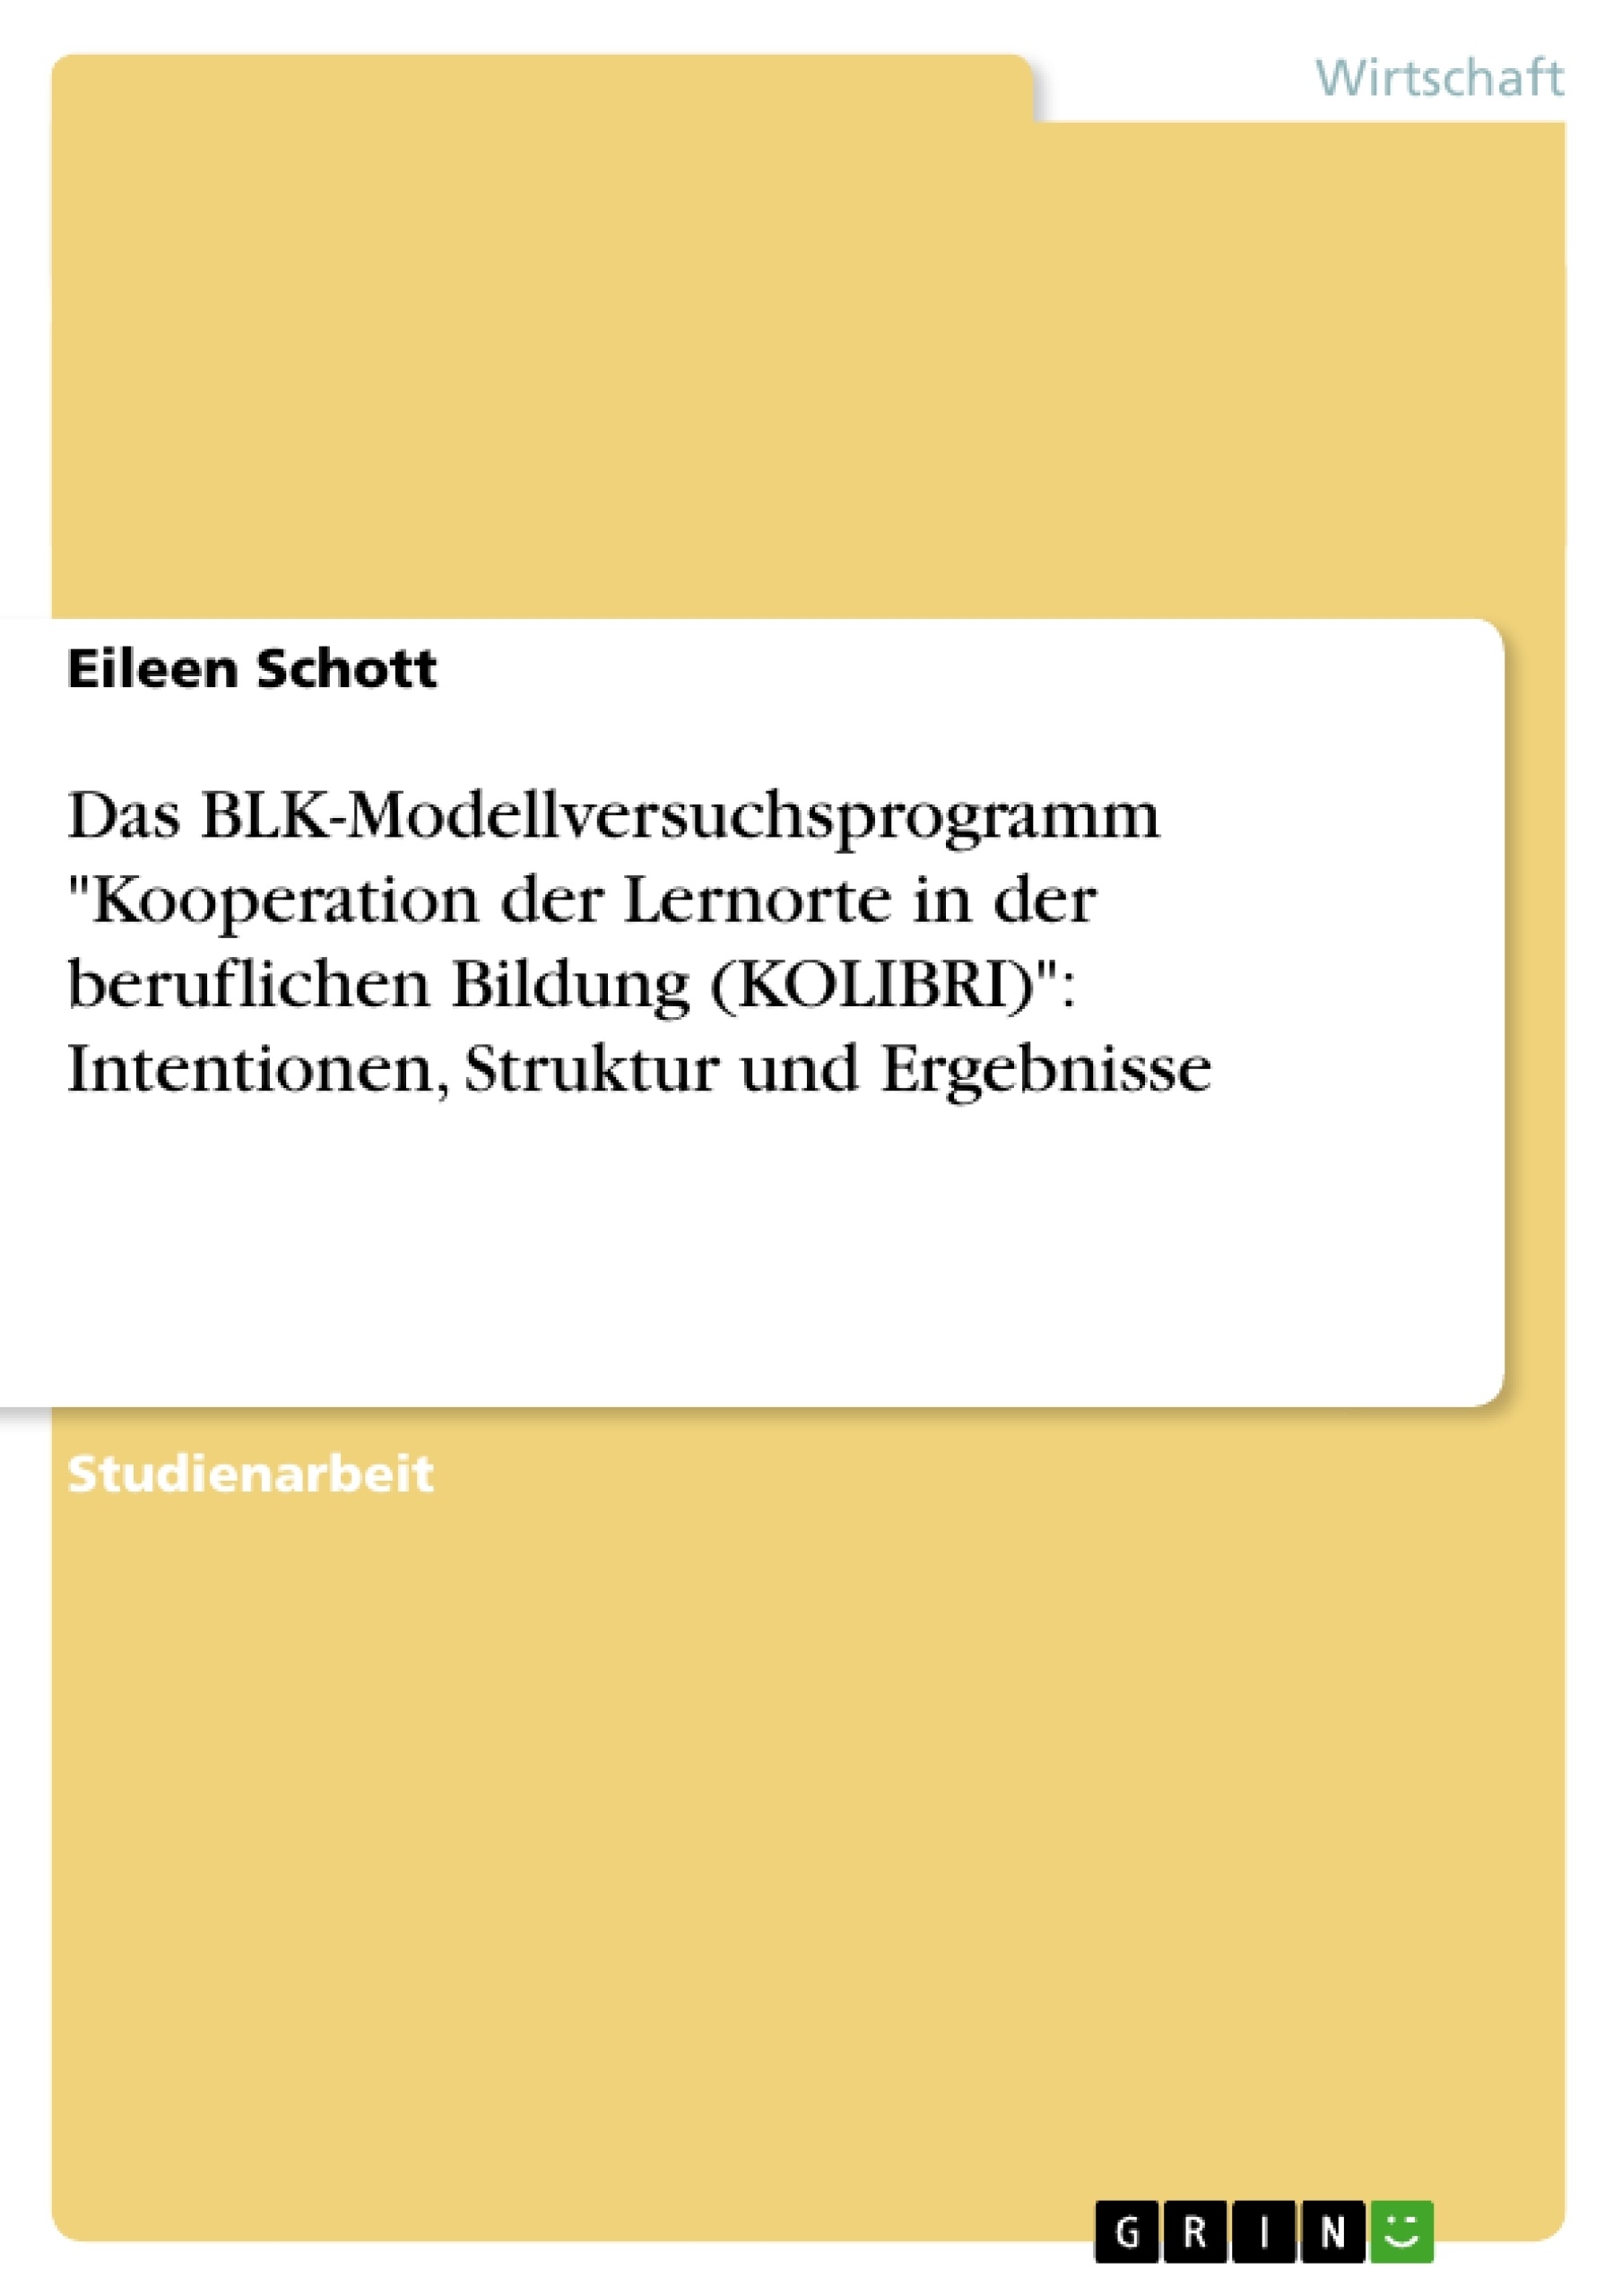 Title: Das BLK-Modellversuchsprogramm "Kooperation der Lernorte in der beruflichen Bildung (KOLIBRI)": Intentionen, Struktur und Ergebnisse